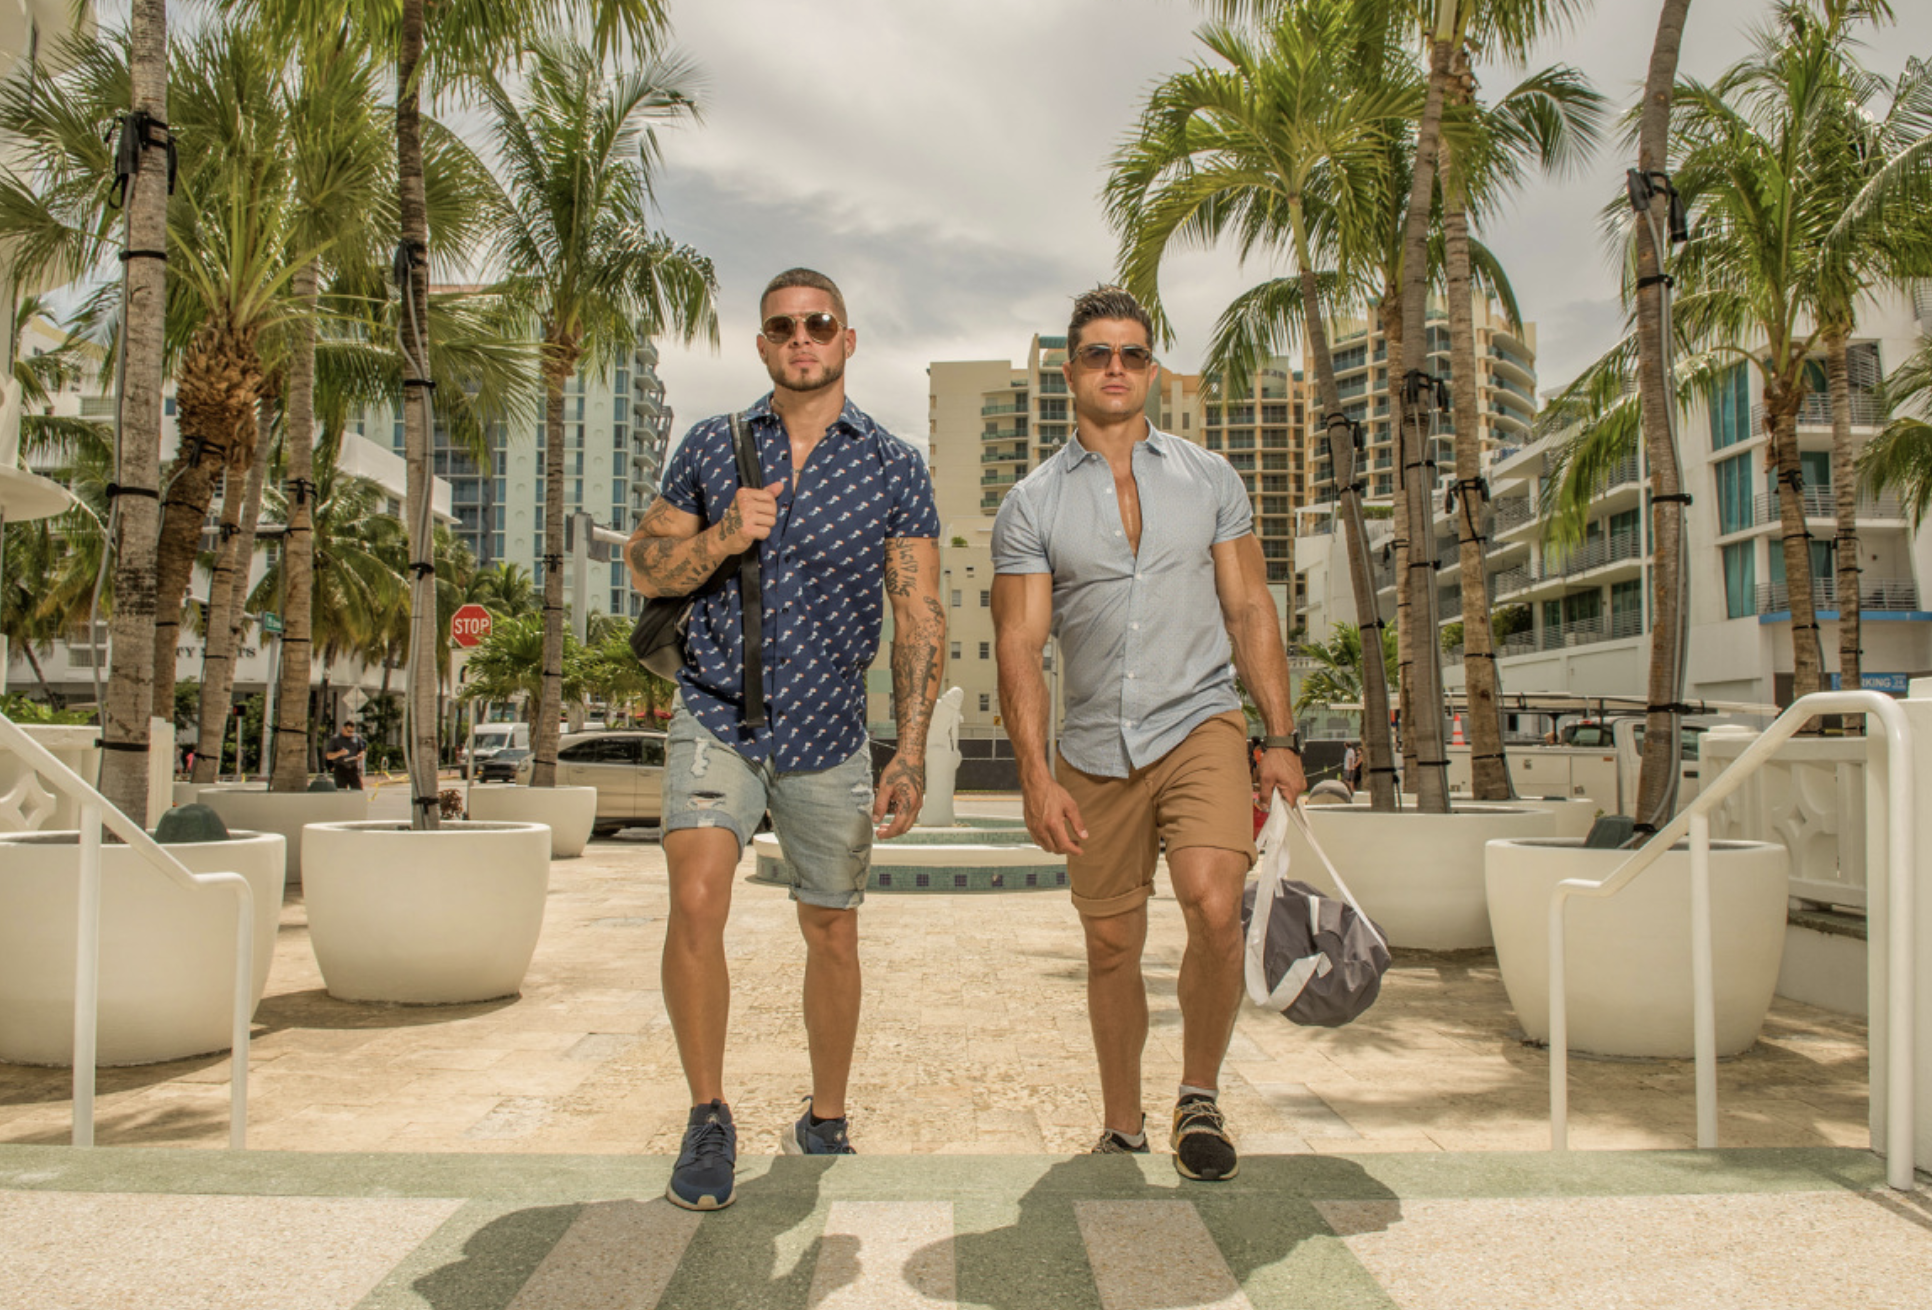 La comunidad LGBT+ de Miami es una de las más vibrantes de los Estados Unidos. (Axel Beach Miami)